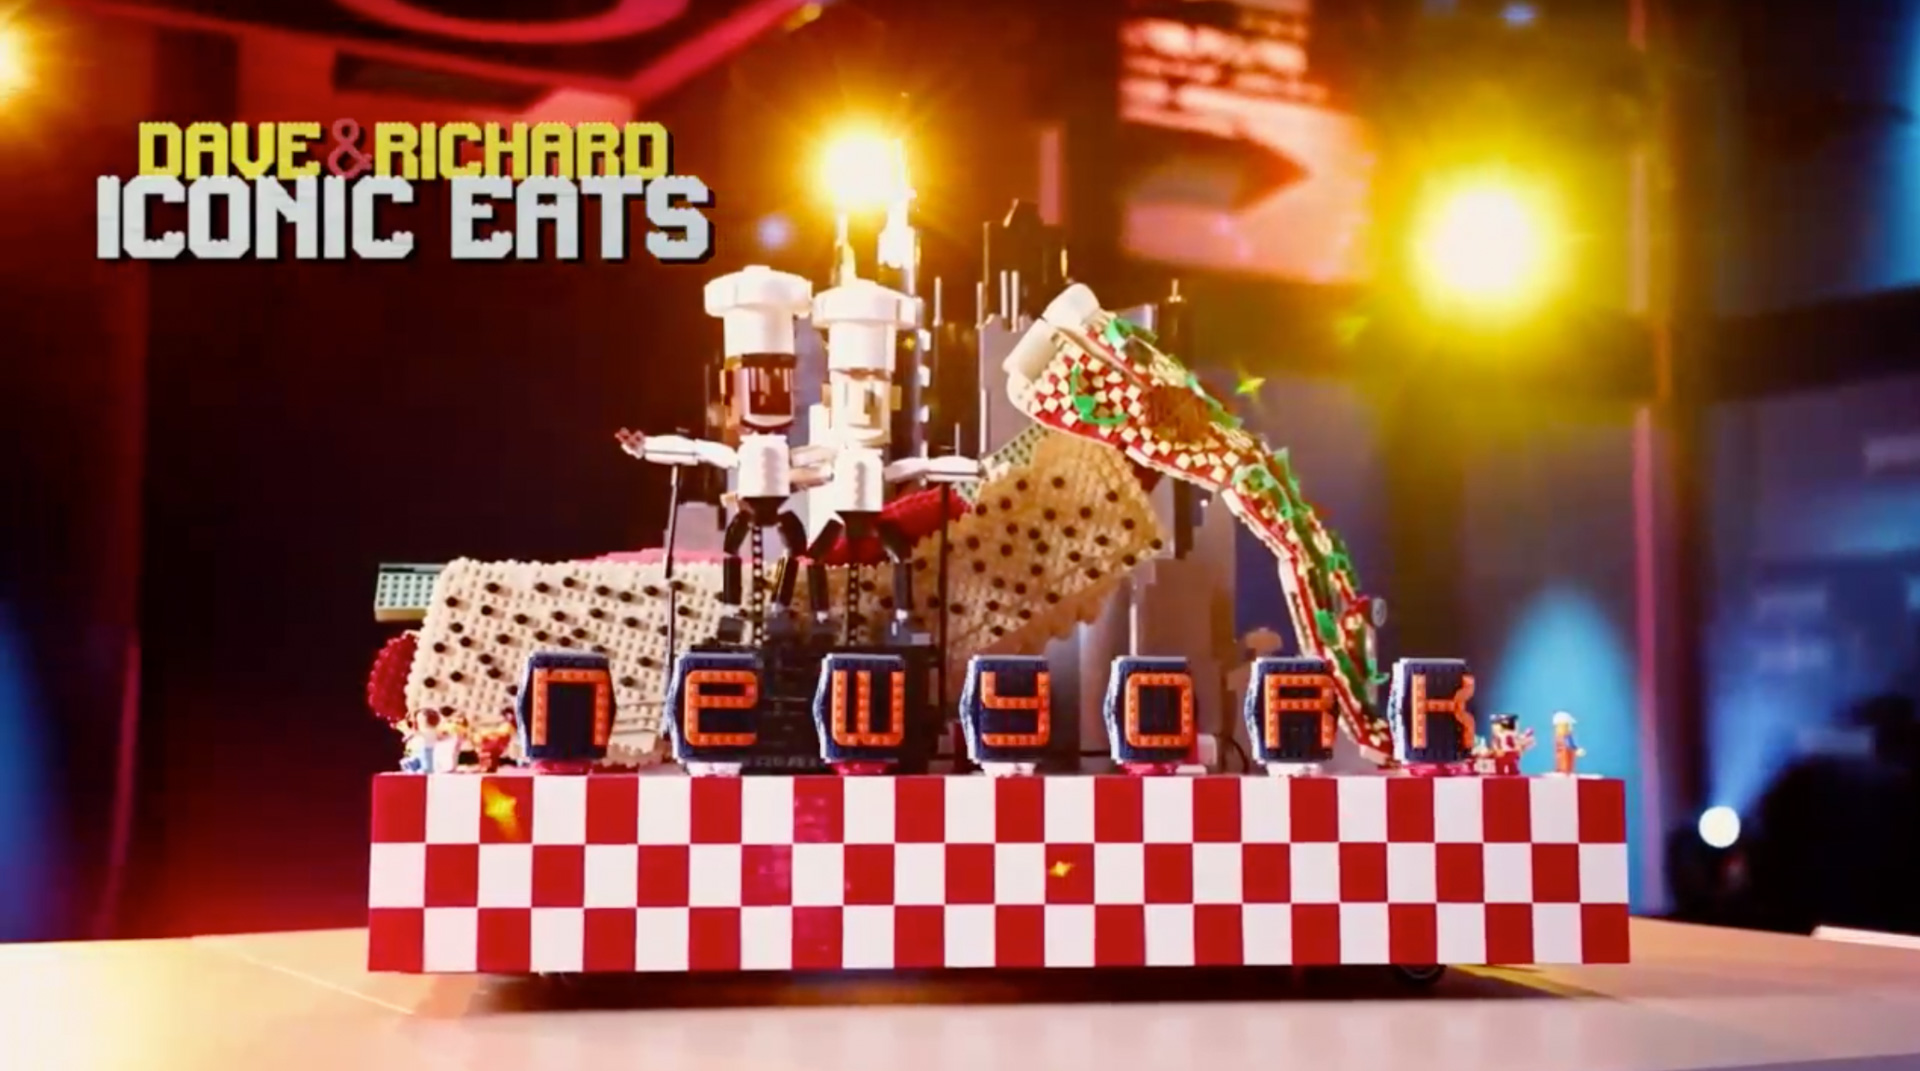 LEGO Masters U.S Season 2 – LEGO Parade Day – Dave and Richard - Iconic Eats